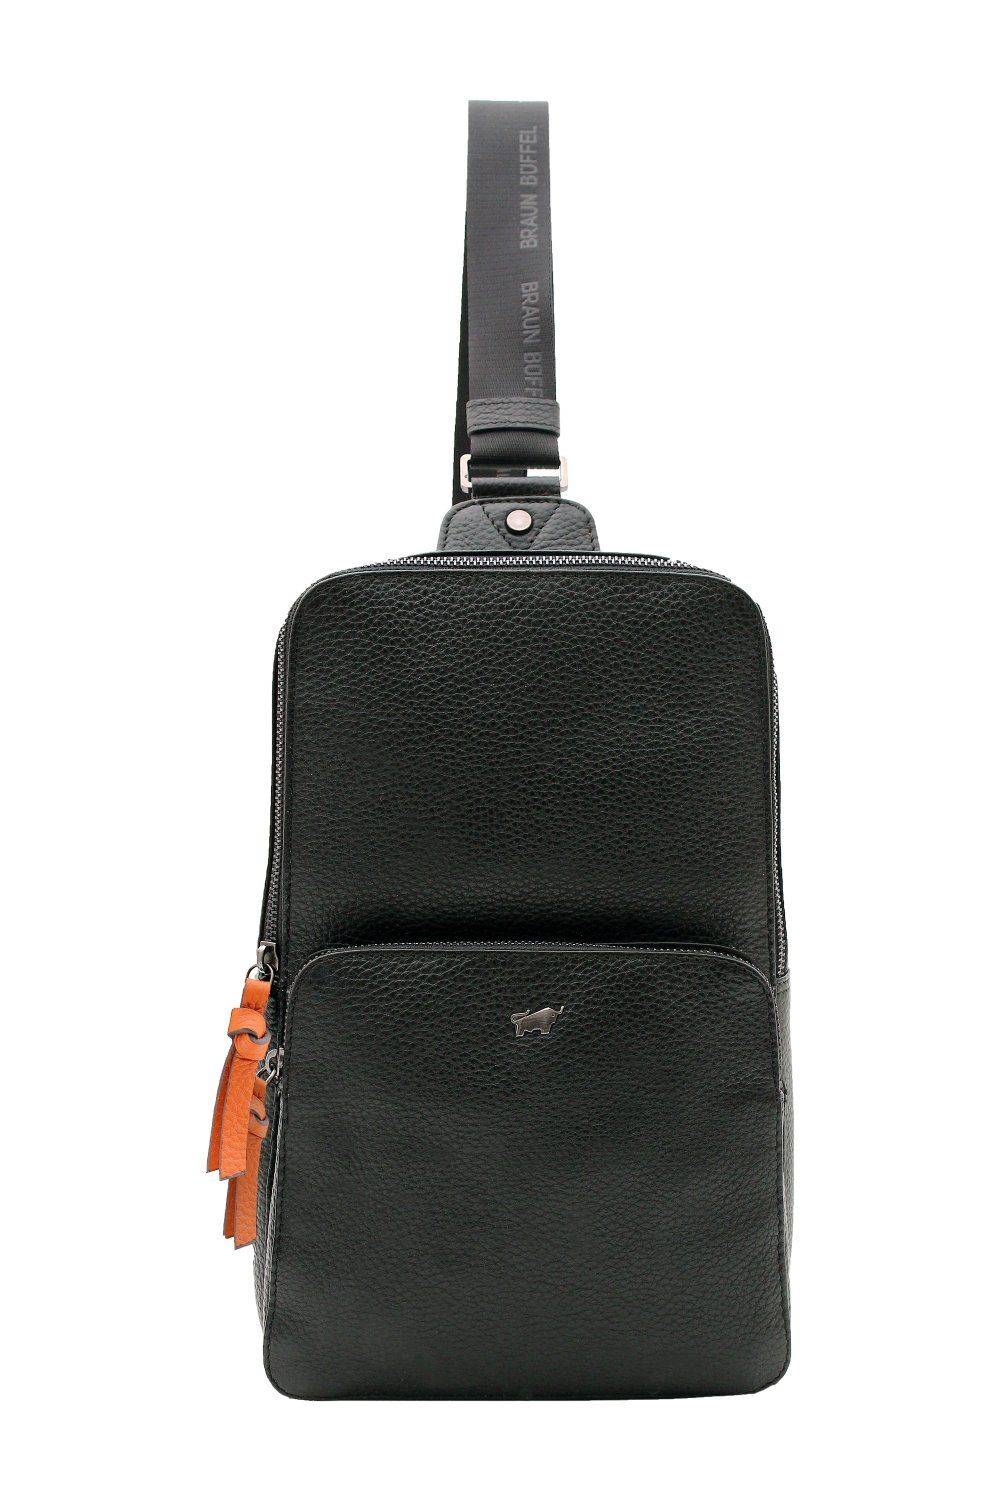 Кросс-боди Braun Buffel NOVARA Sling Bag 26360, цвет черный, размер ONE SIZE - фото 1